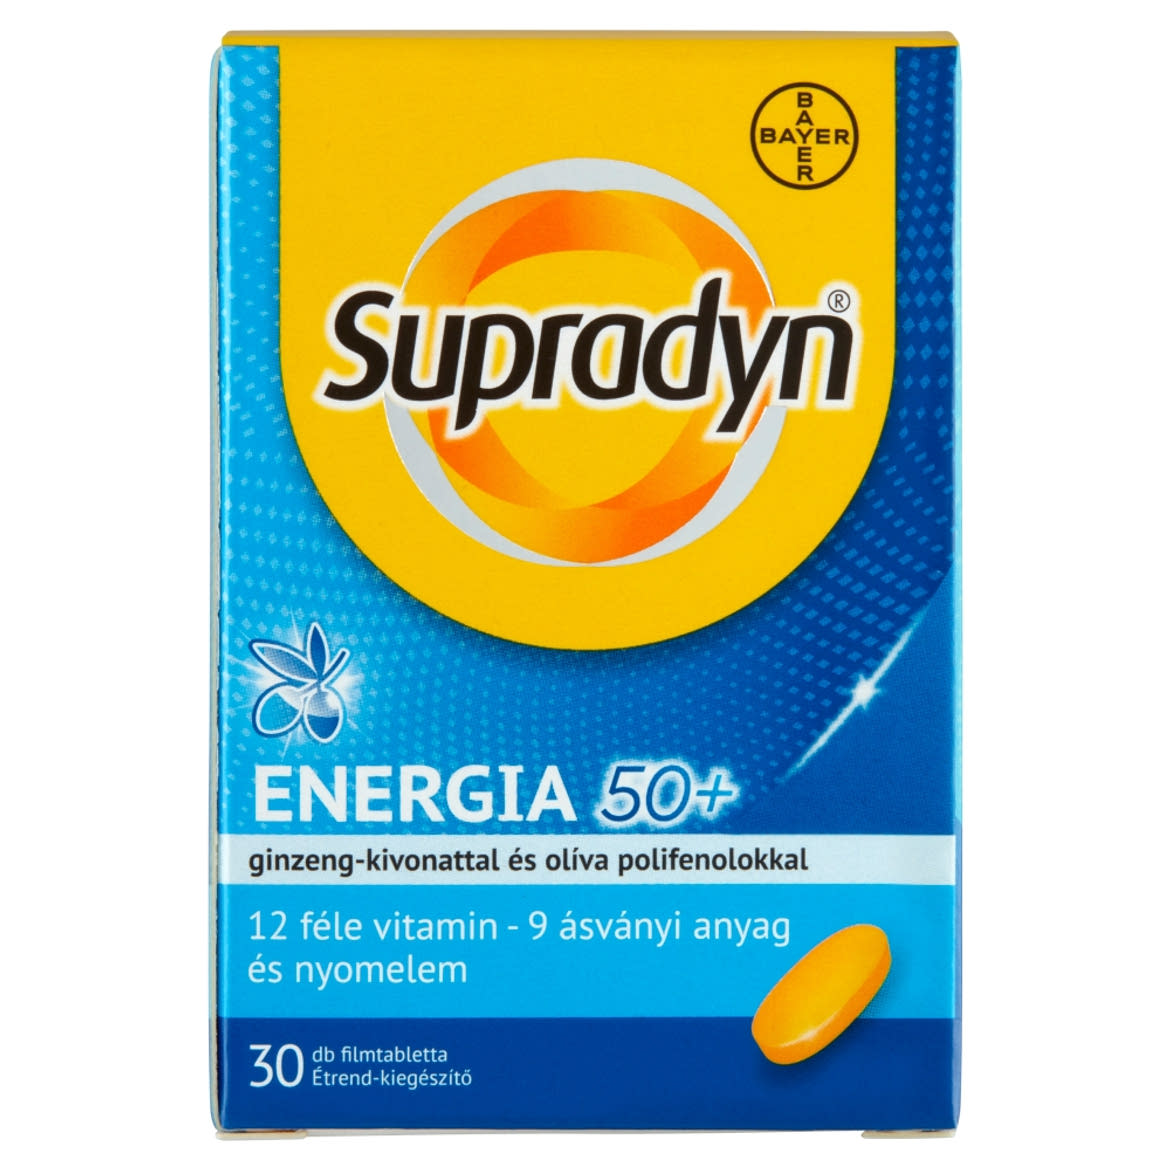 Supradyn Energia 50+ multivitamin & ásványi anyag tartalmú étrend-kiegészítő filmtabletta